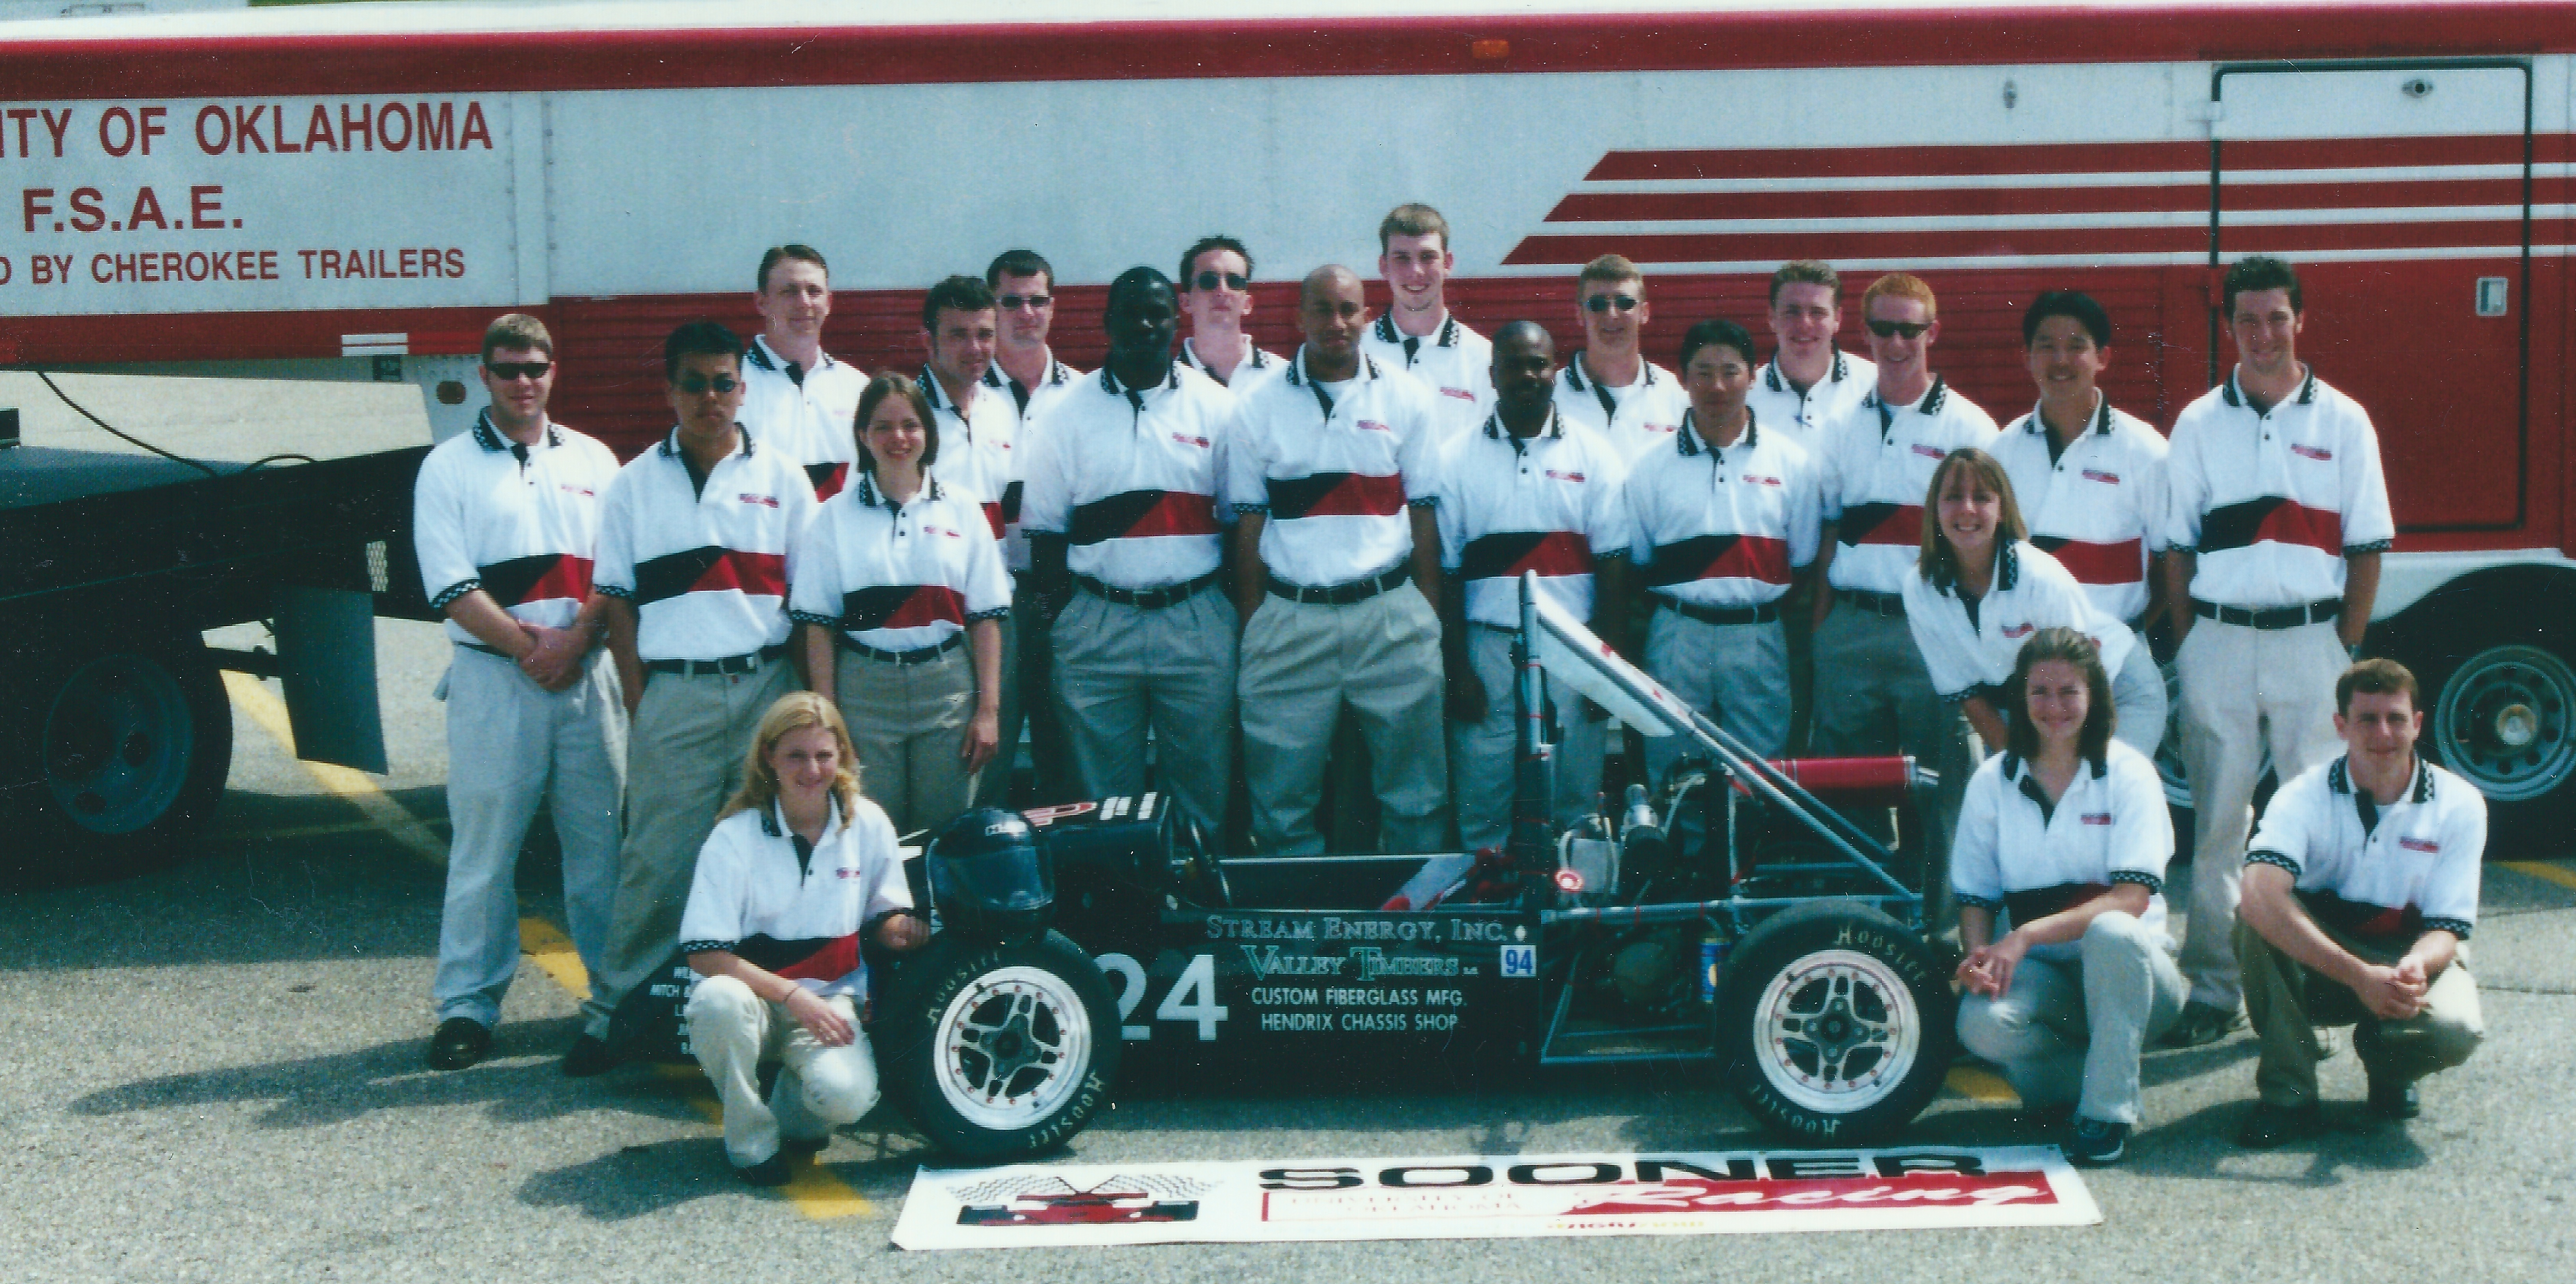 Sooner Racing Team in 2001